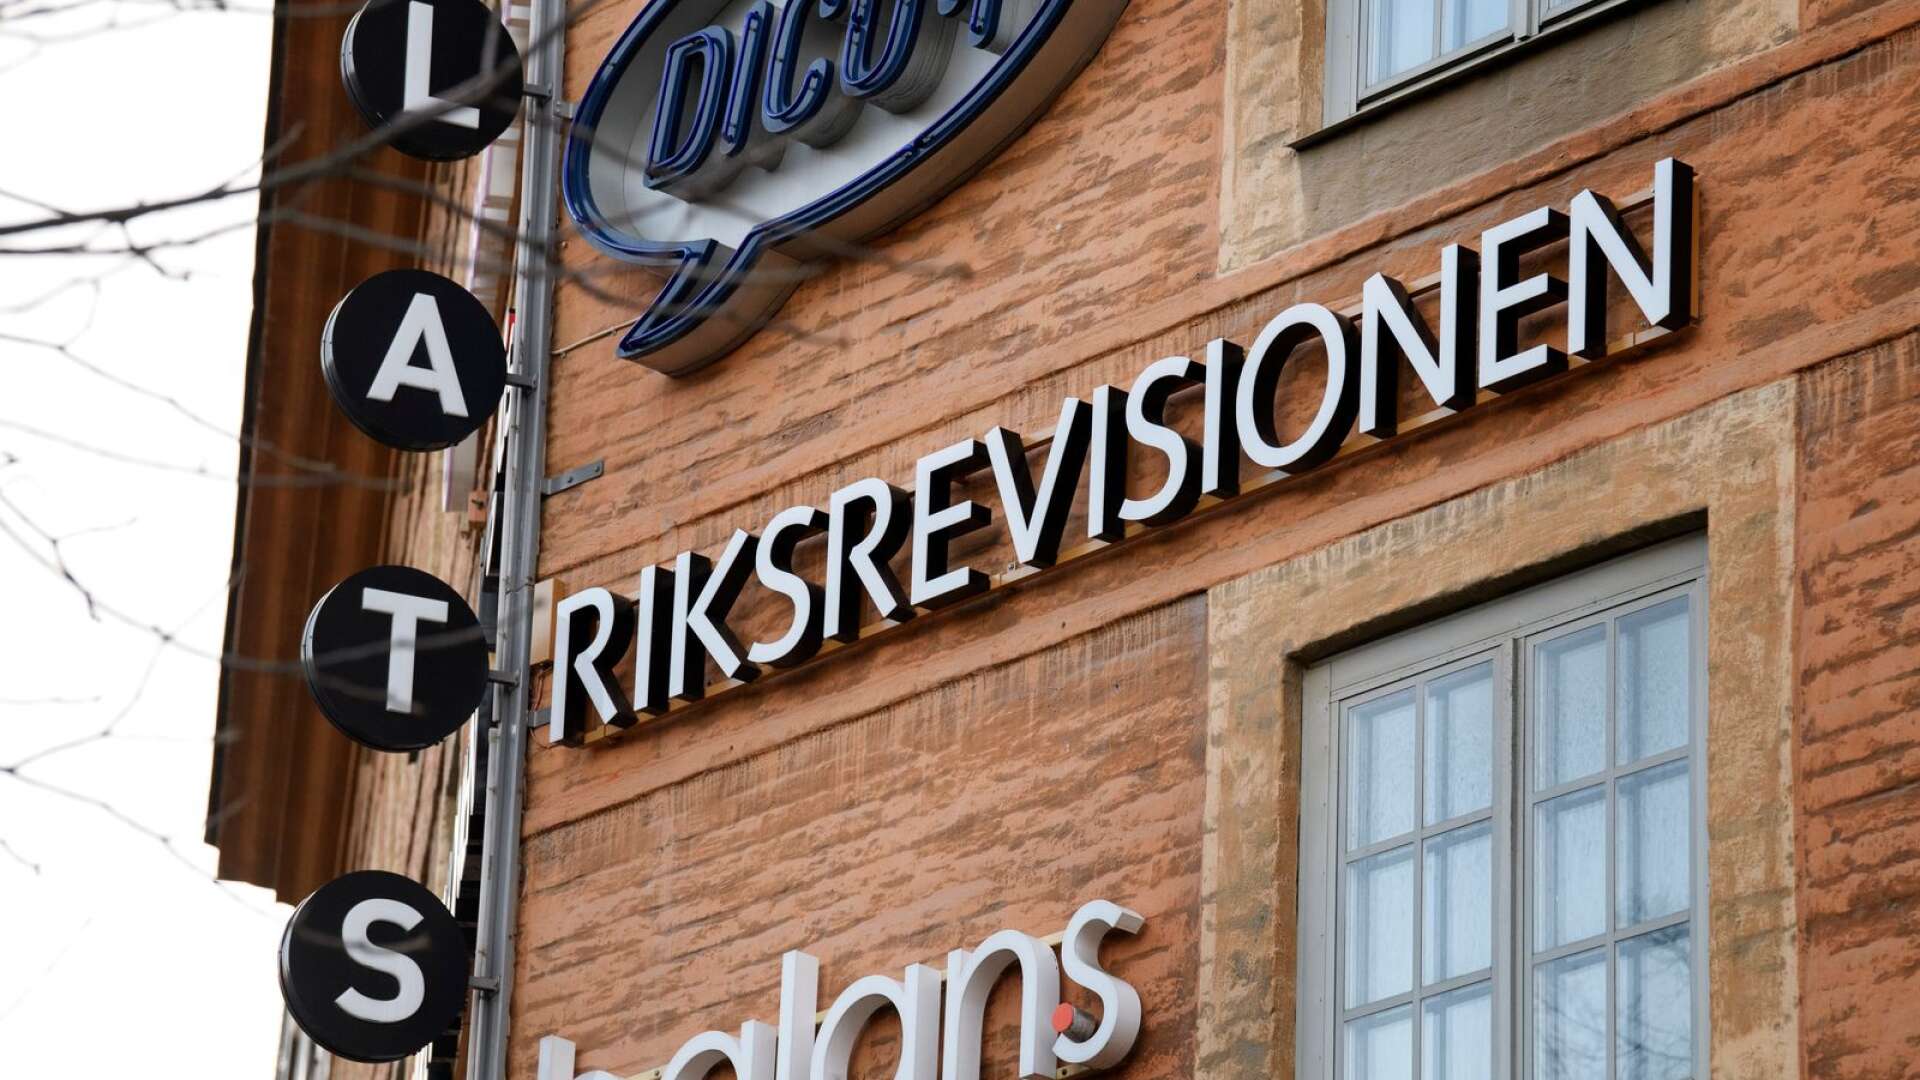 Riksrevisionen slår fast att bygg- och anläggning, tillsammans med bland annat städ, hotell och restaurang, tillhör riskmiljöerna för arbetskraftsexploatering, skriver Claes Thunblad och Carin Hansdotter.